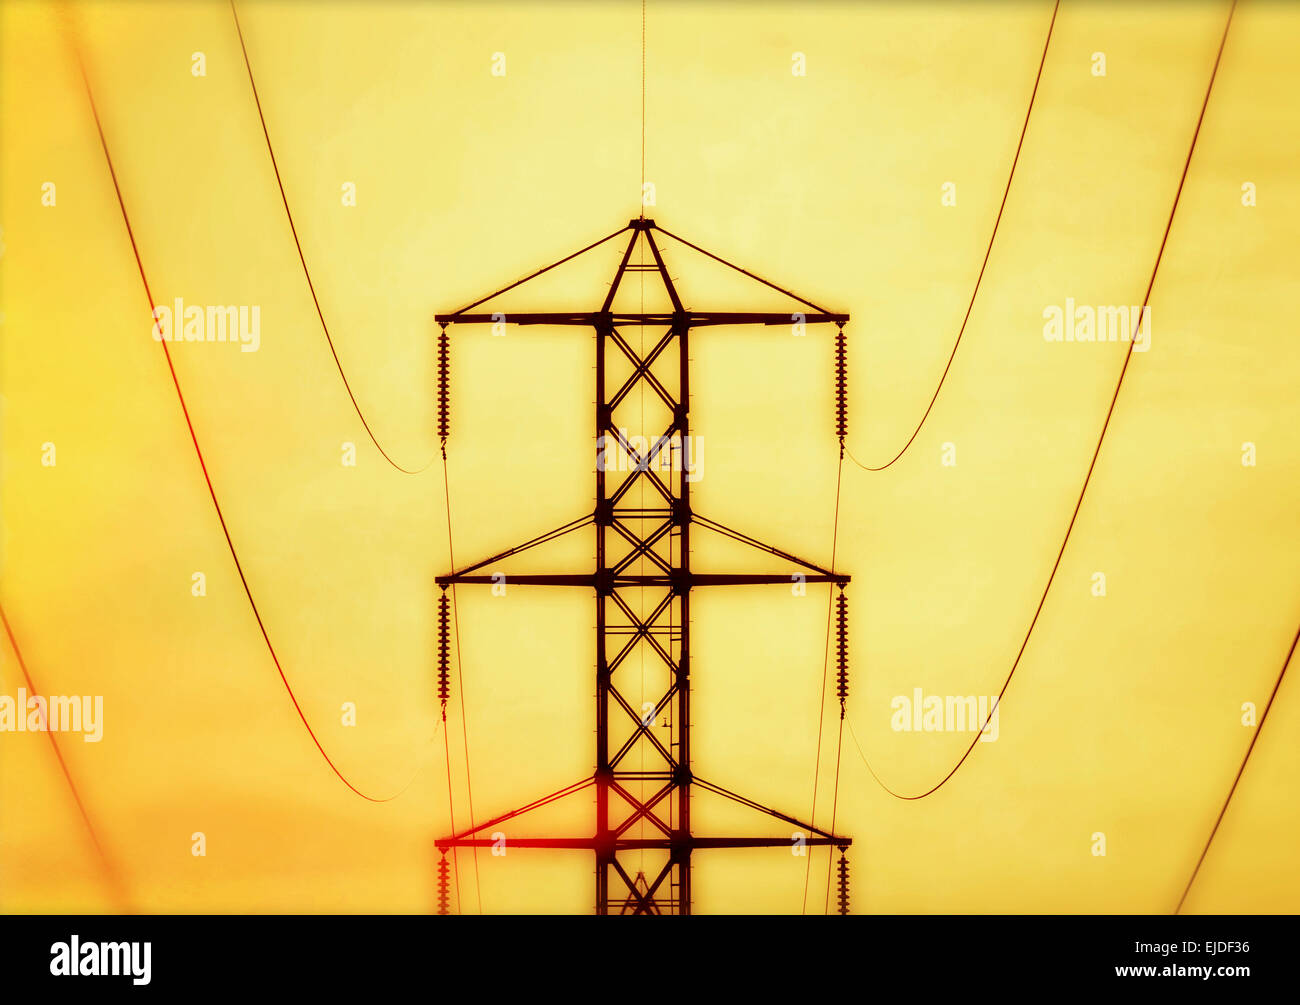 Ein hydro-Tower, ein Strommast, Metallstruktur mit Armen Stromleitungen, gegen einen lebhaften gelben Himmel tragen. Stockfoto